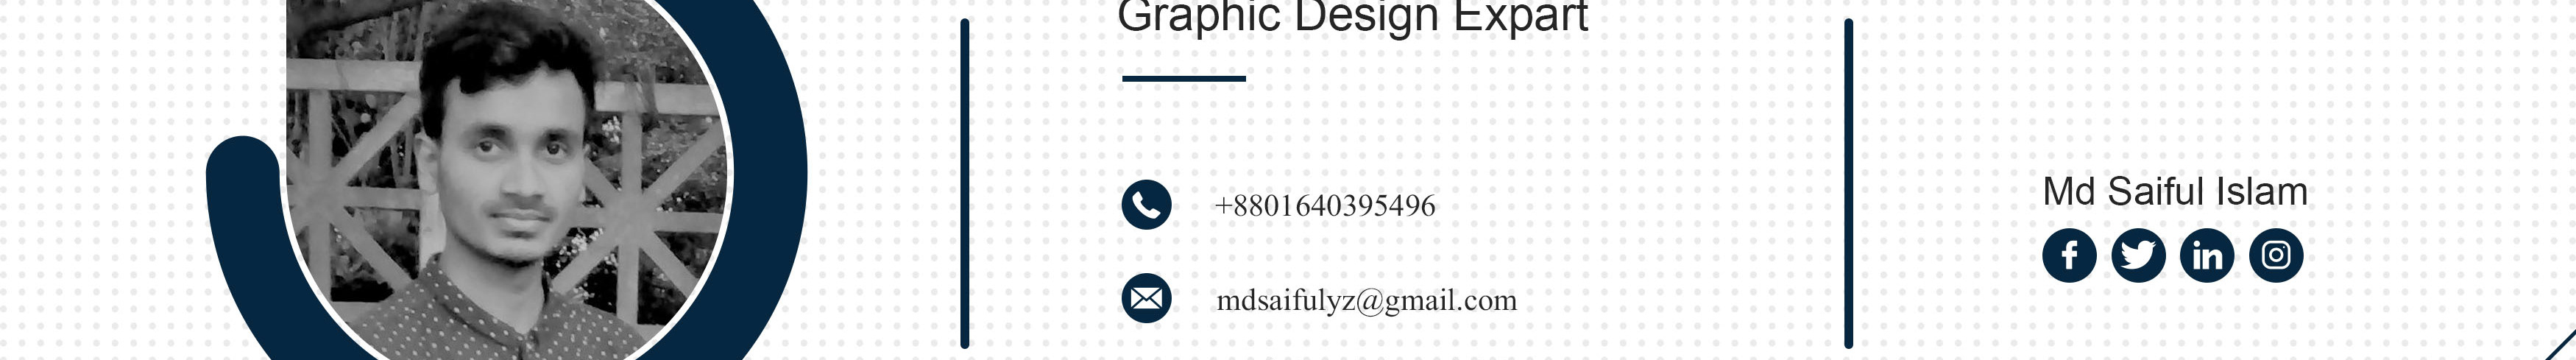 Md Saiful Islam profil başlığı